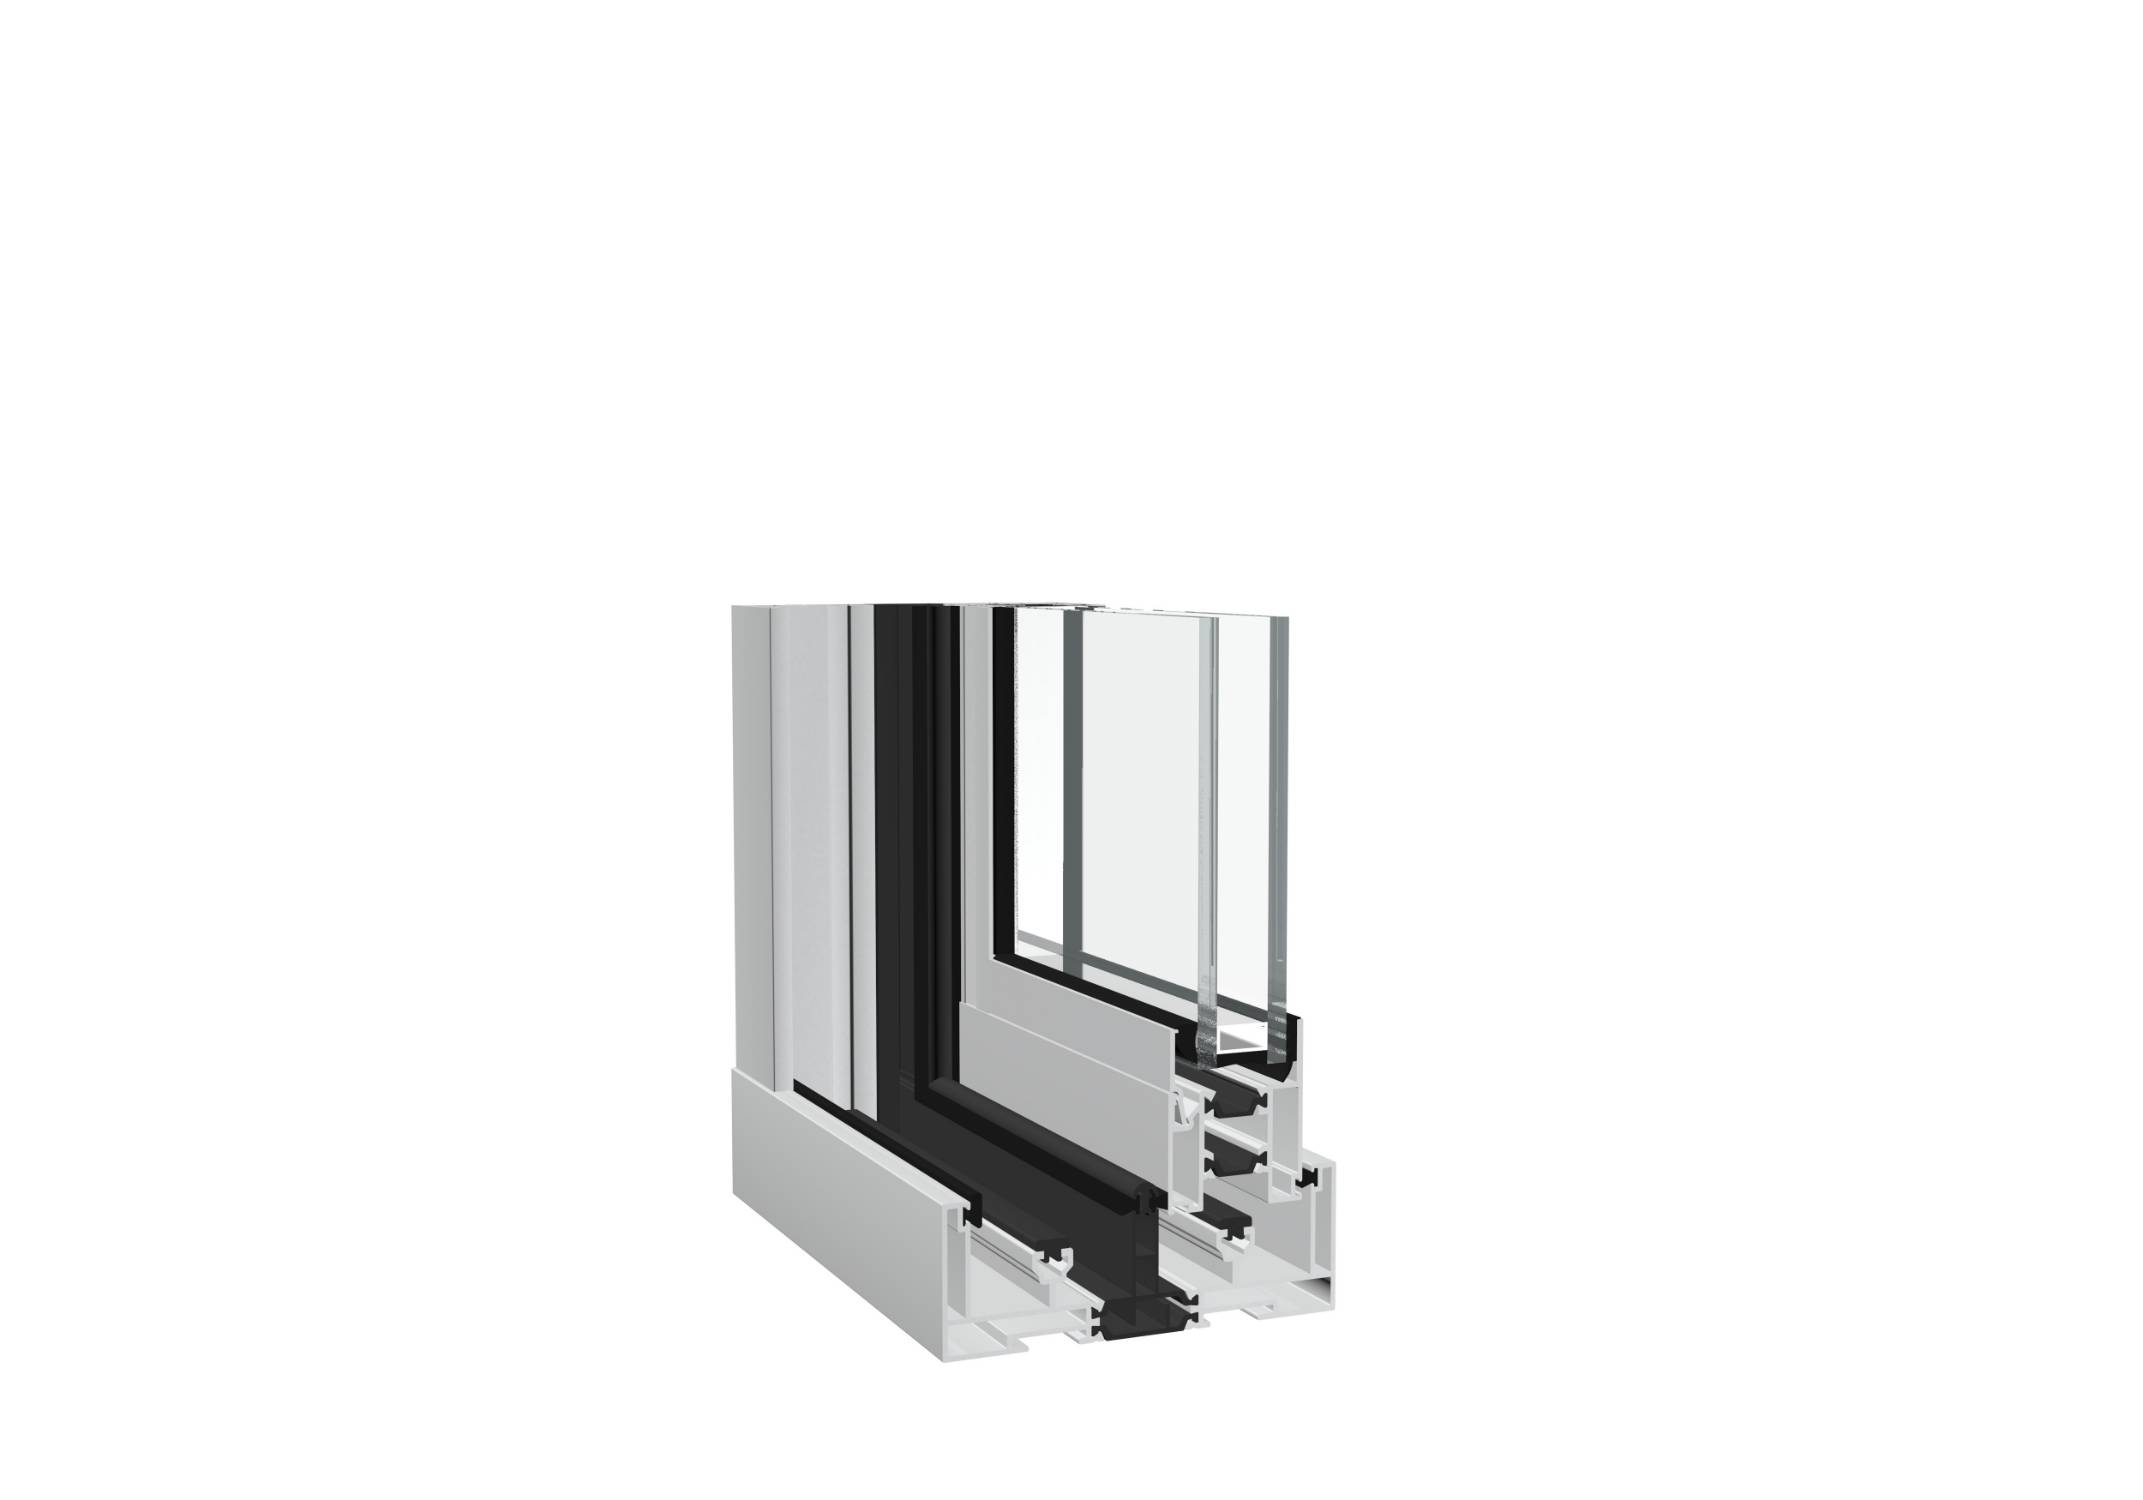 DUALSLIDE Vertical Sliding Aluminium Windows